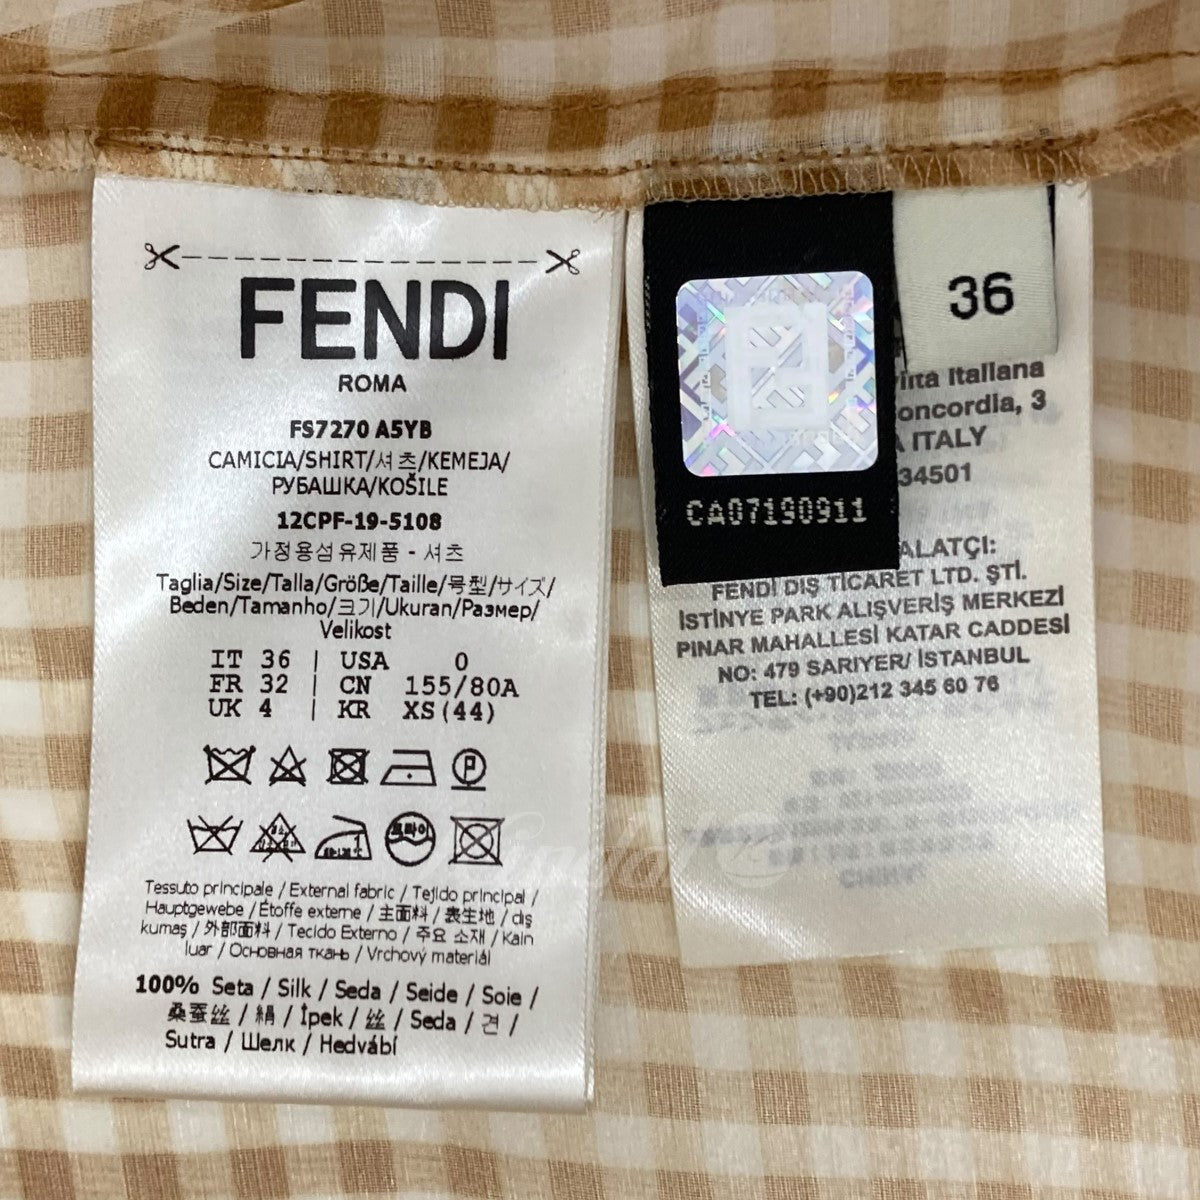 FENDI(フェンディ) シアーシャツ FS7270 A5YB